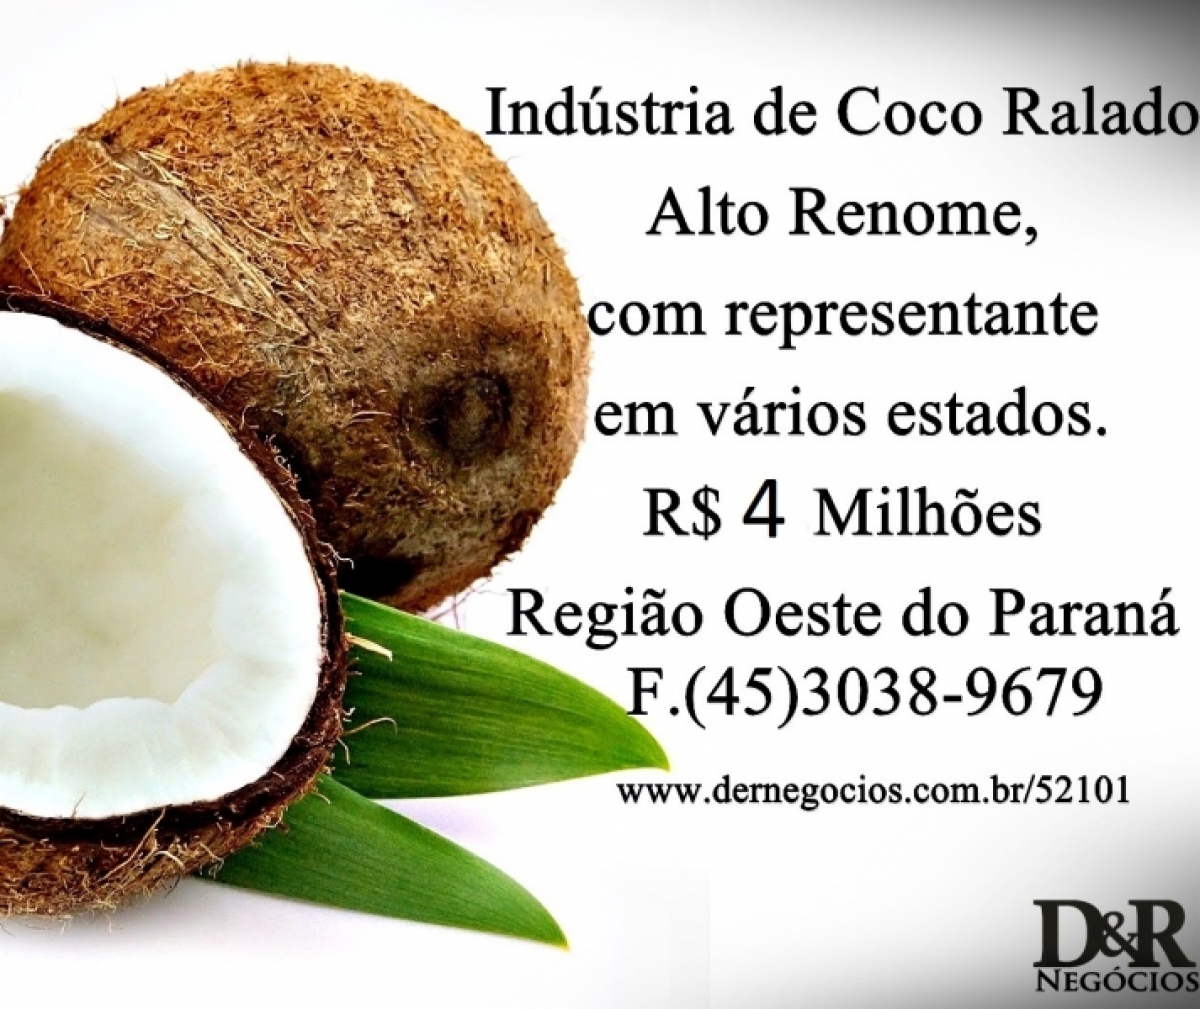 Indústria de Coco Ralado, Representantes em Vários Estados.